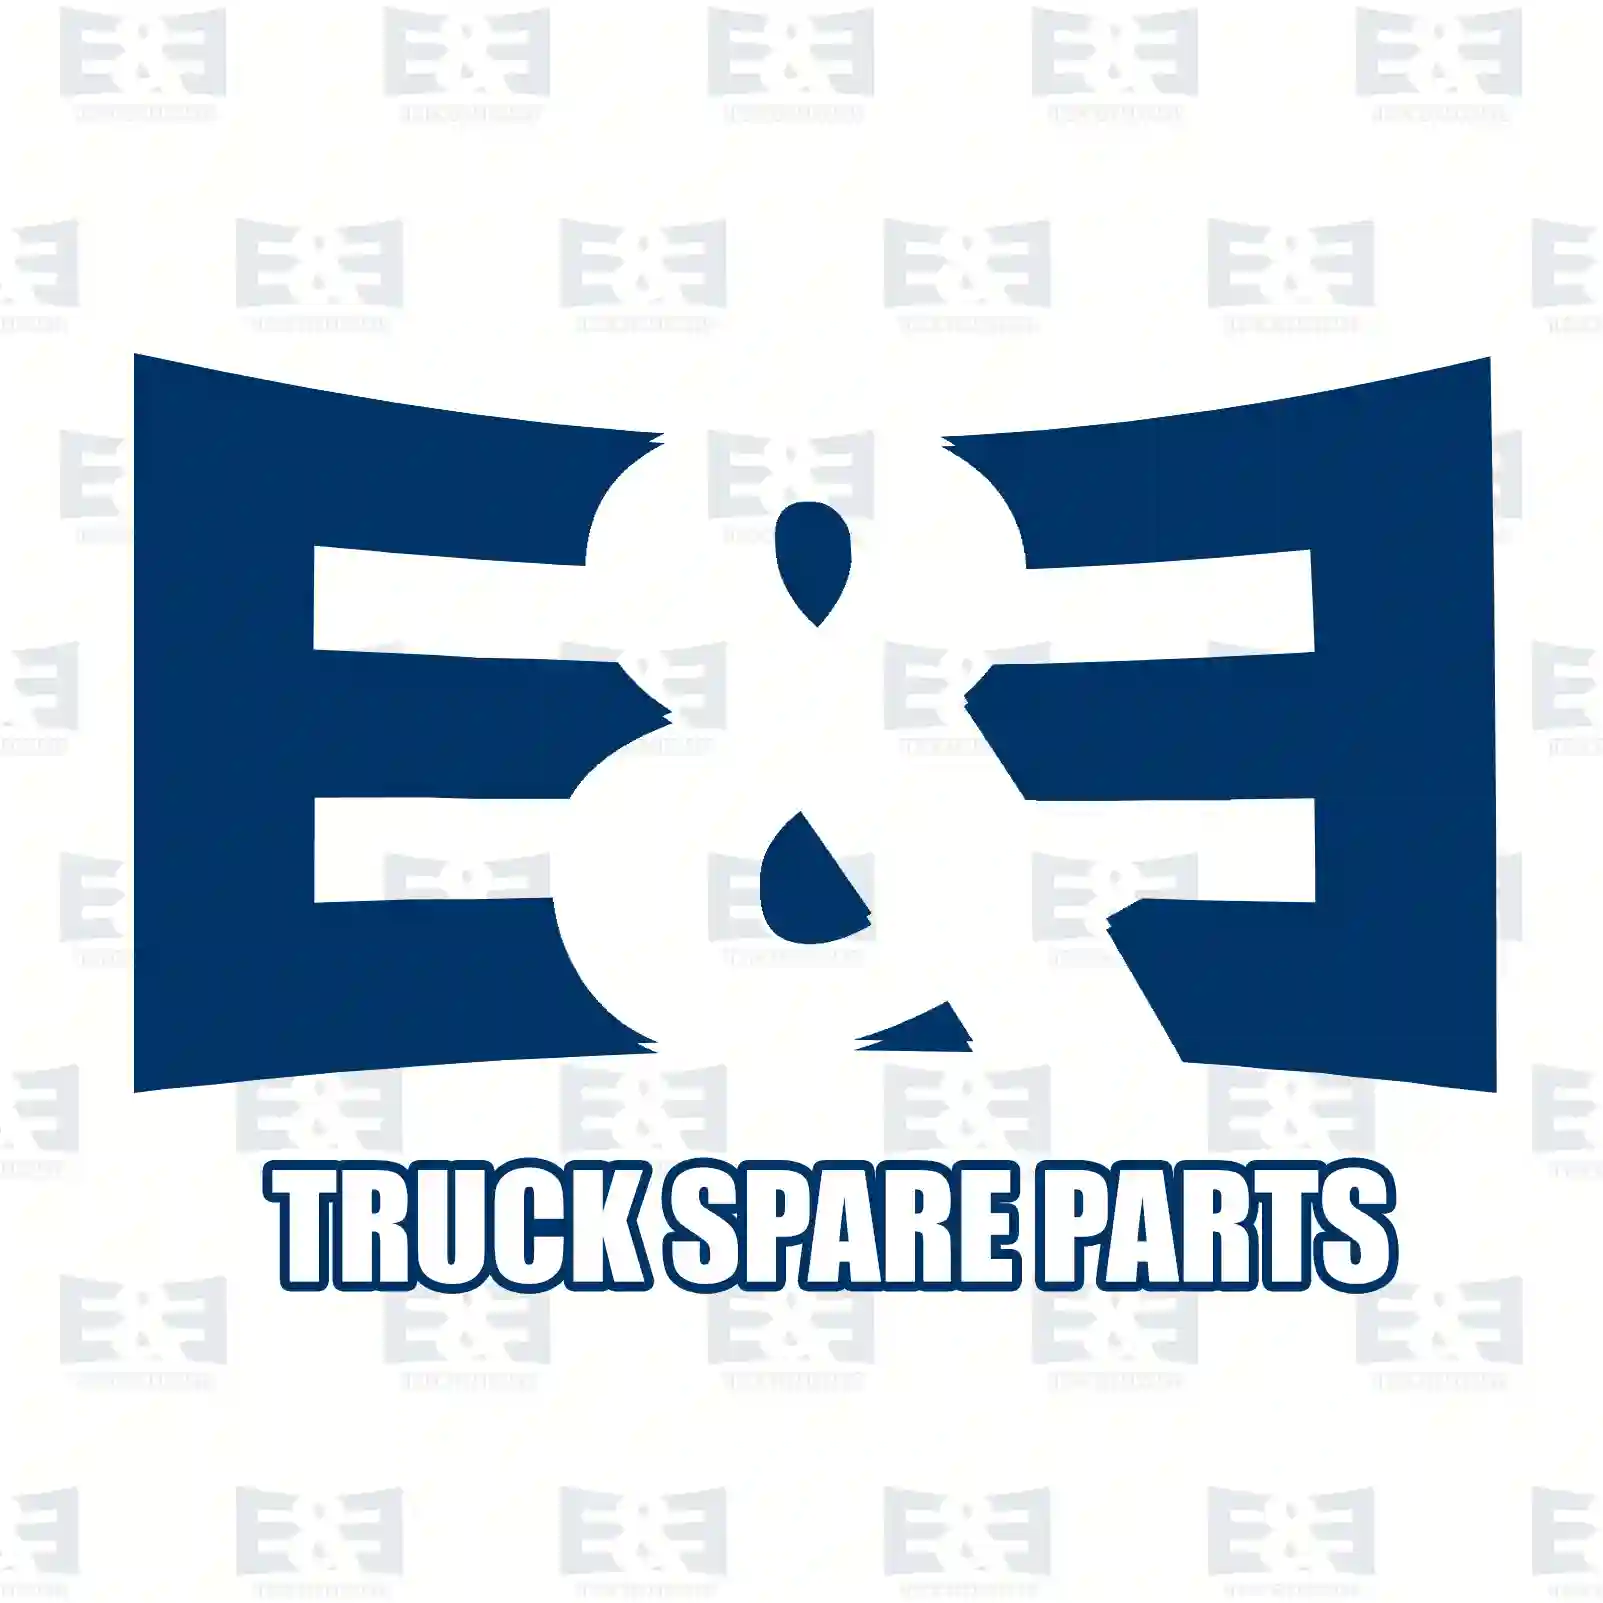 Cabin shock absorber, 2E2282056, 9603100855, 9603107655, 9613101655, 9613103655 ||  2E2282056 E&E Truck Spare Parts | Truck Spare Parts, Auotomotive Spare Parts Cabin shock absorber, 2E2282056, 9603100855, 9603107655, 9613101655, 9613103655 ||  2E2282056 E&E Truck Spare Parts | Truck Spare Parts, Auotomotive Spare Parts